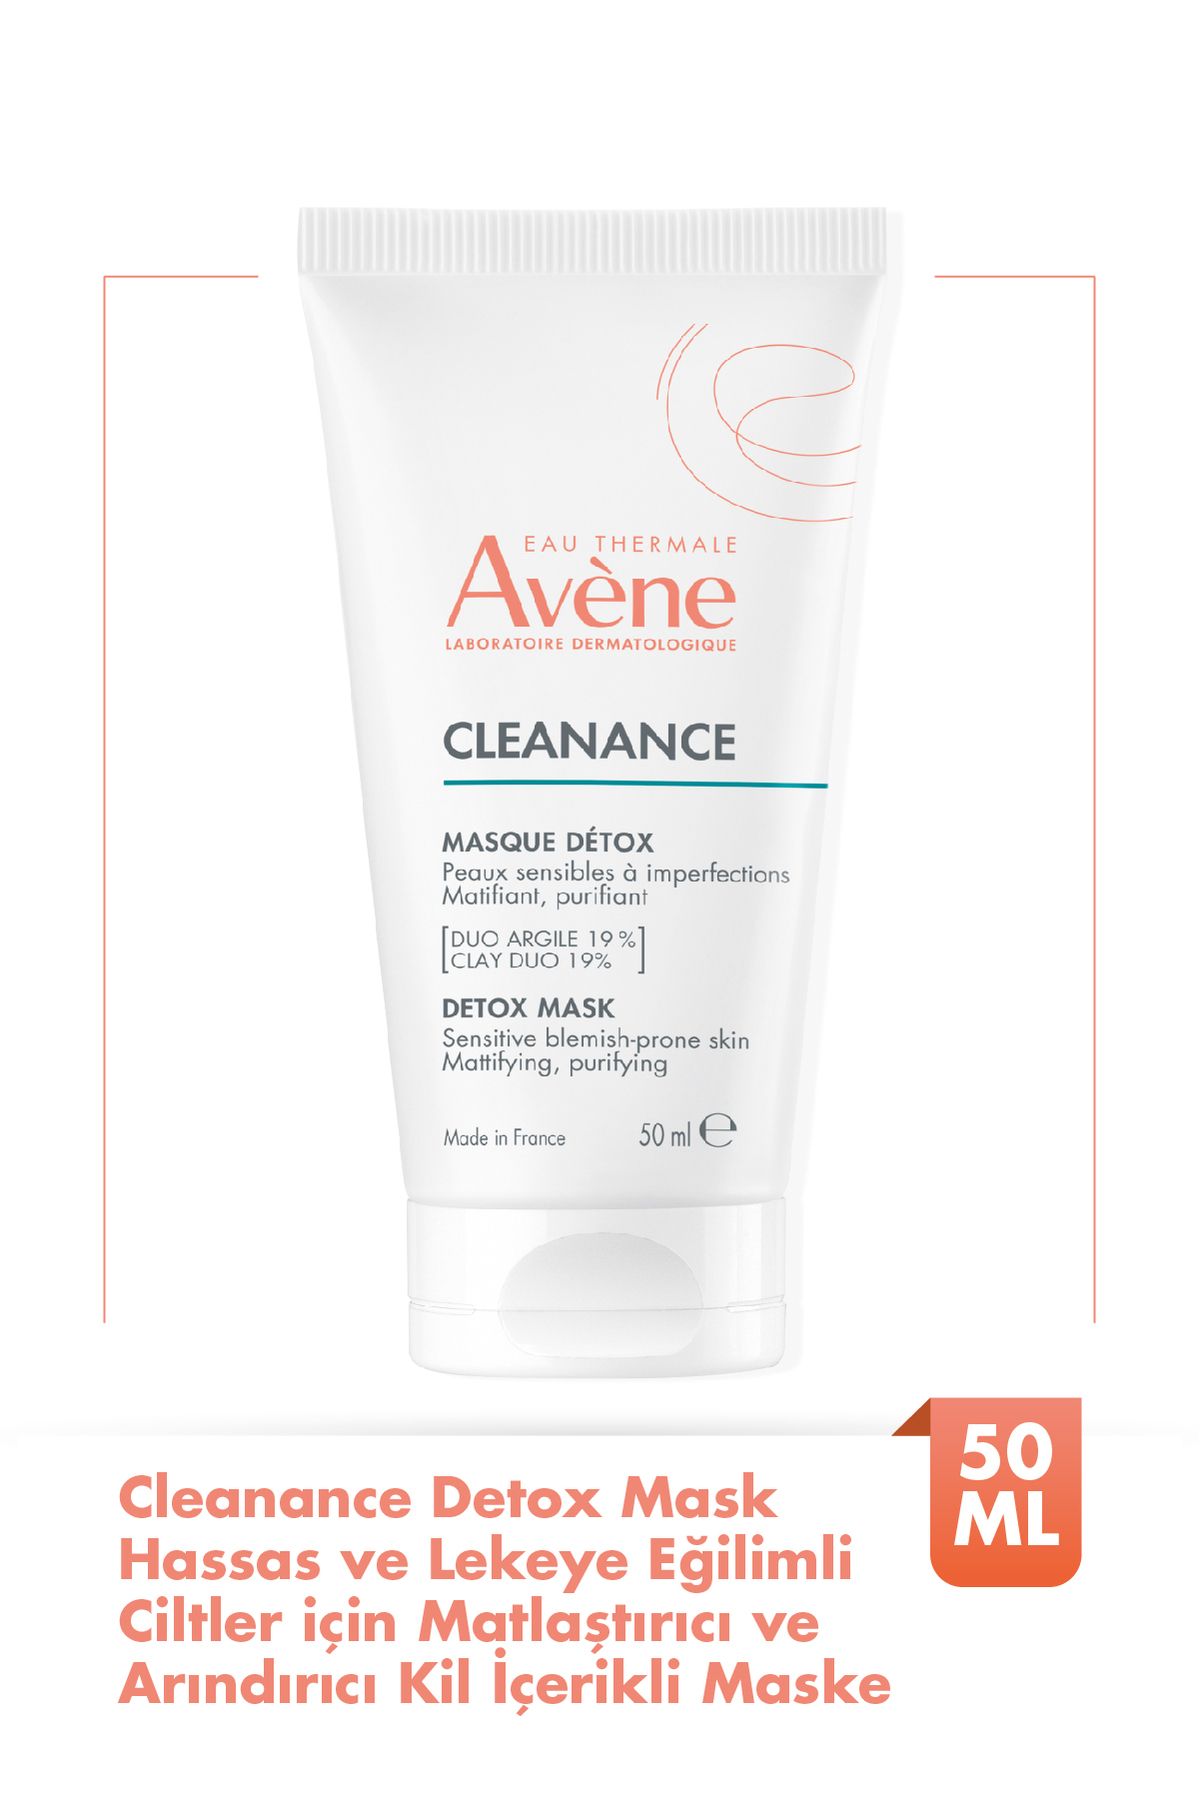 Avene Cleanance Detox Mask Hassas ve Lekeye Eğilimli Ciltler İçin Matlaştırıcı Kil İçerikli Maske 50 ml